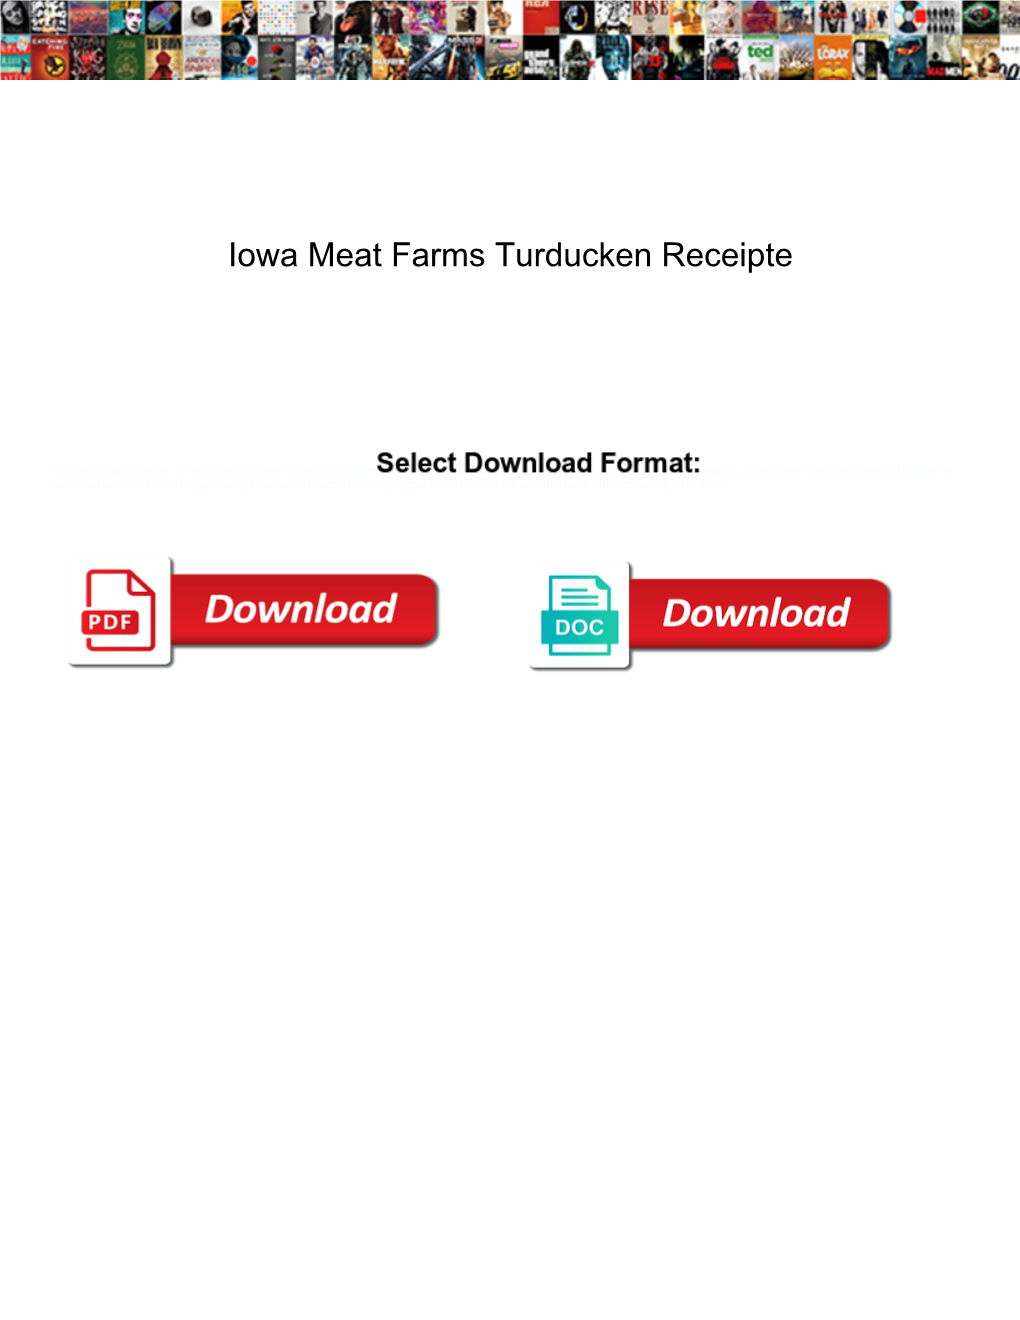 Iowa Meat Farms Turducken Receipte